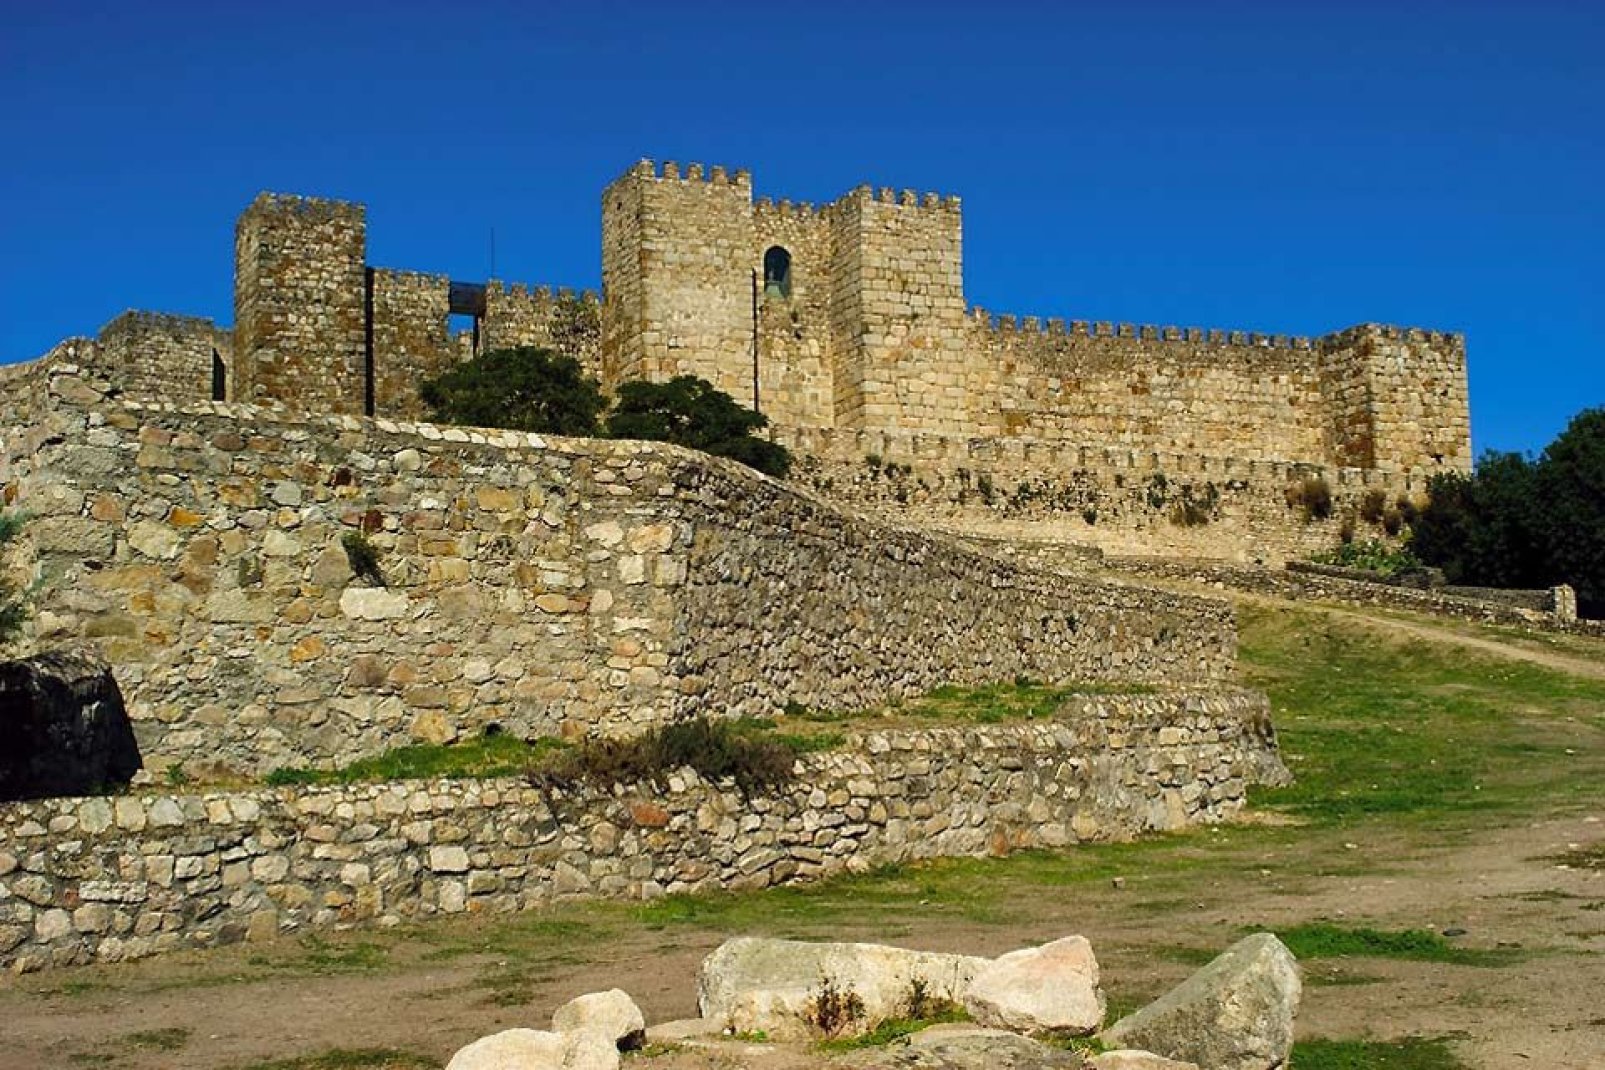 Diese Burg liegt auf einer Anhöhe über Trujillo. Sie wurde im 13. Jahrhundert über einer ehemaligen maurischen Festung errichtet.